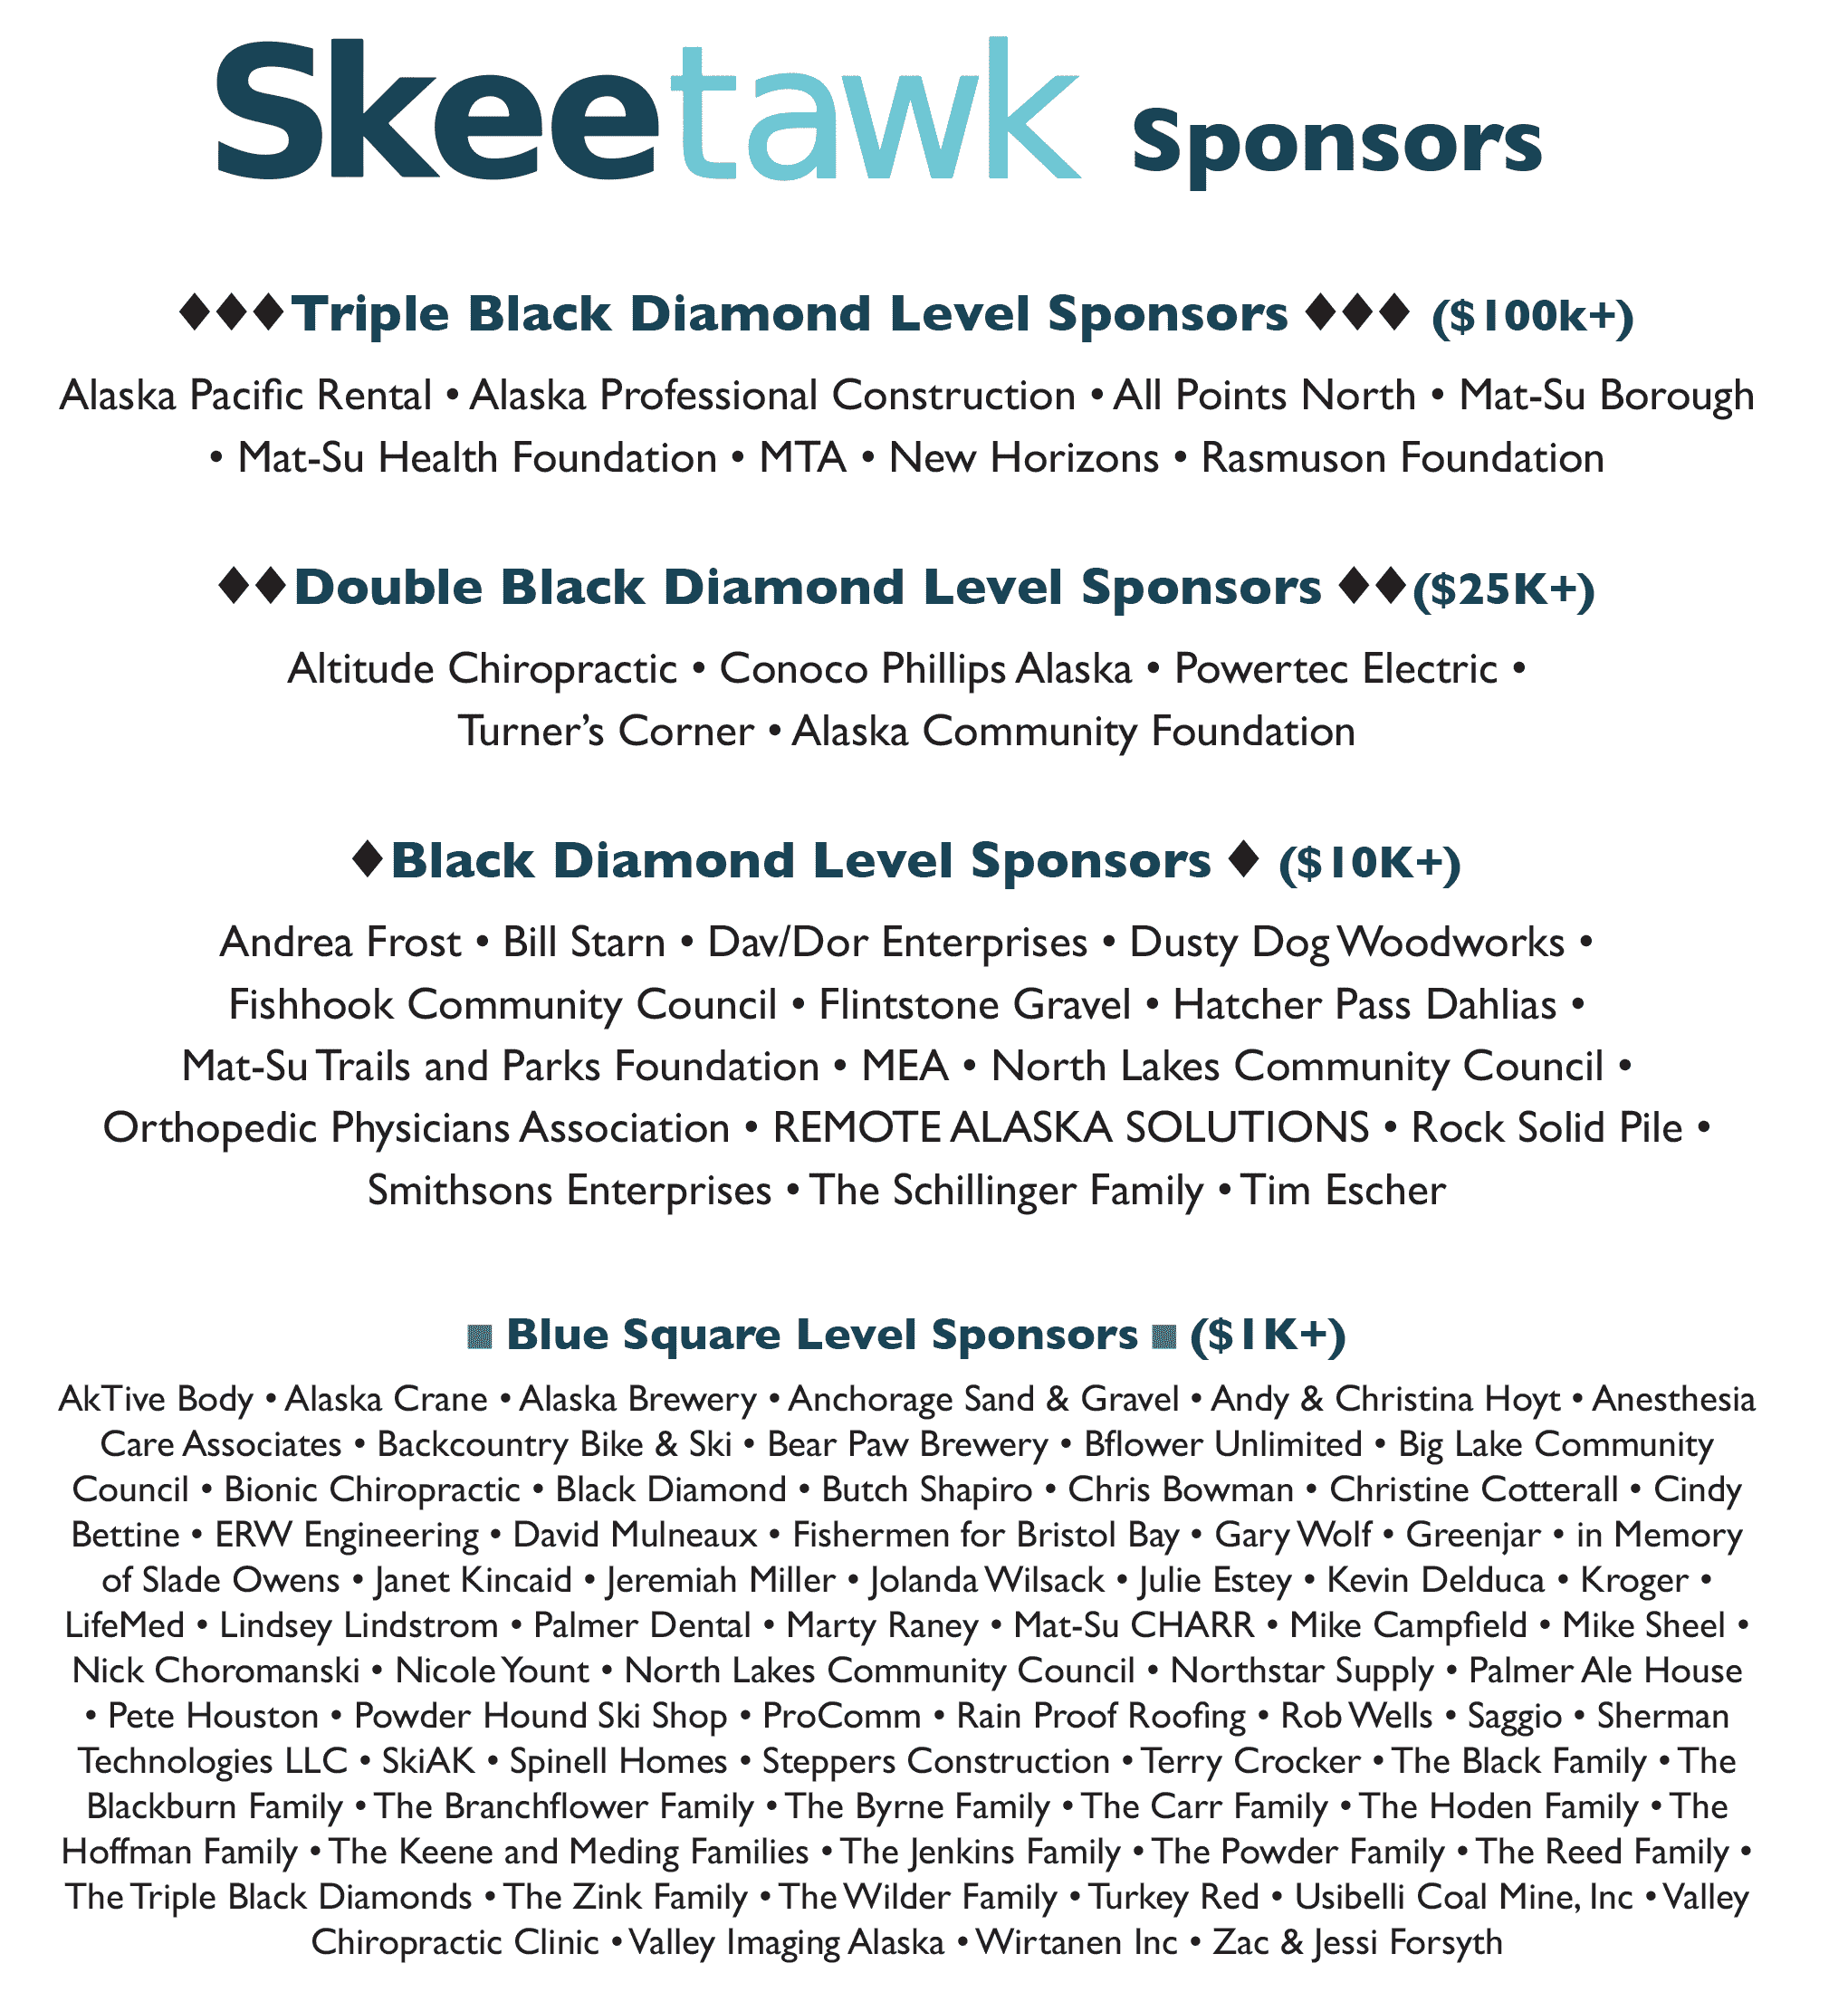 List of Skeetawk sponsors